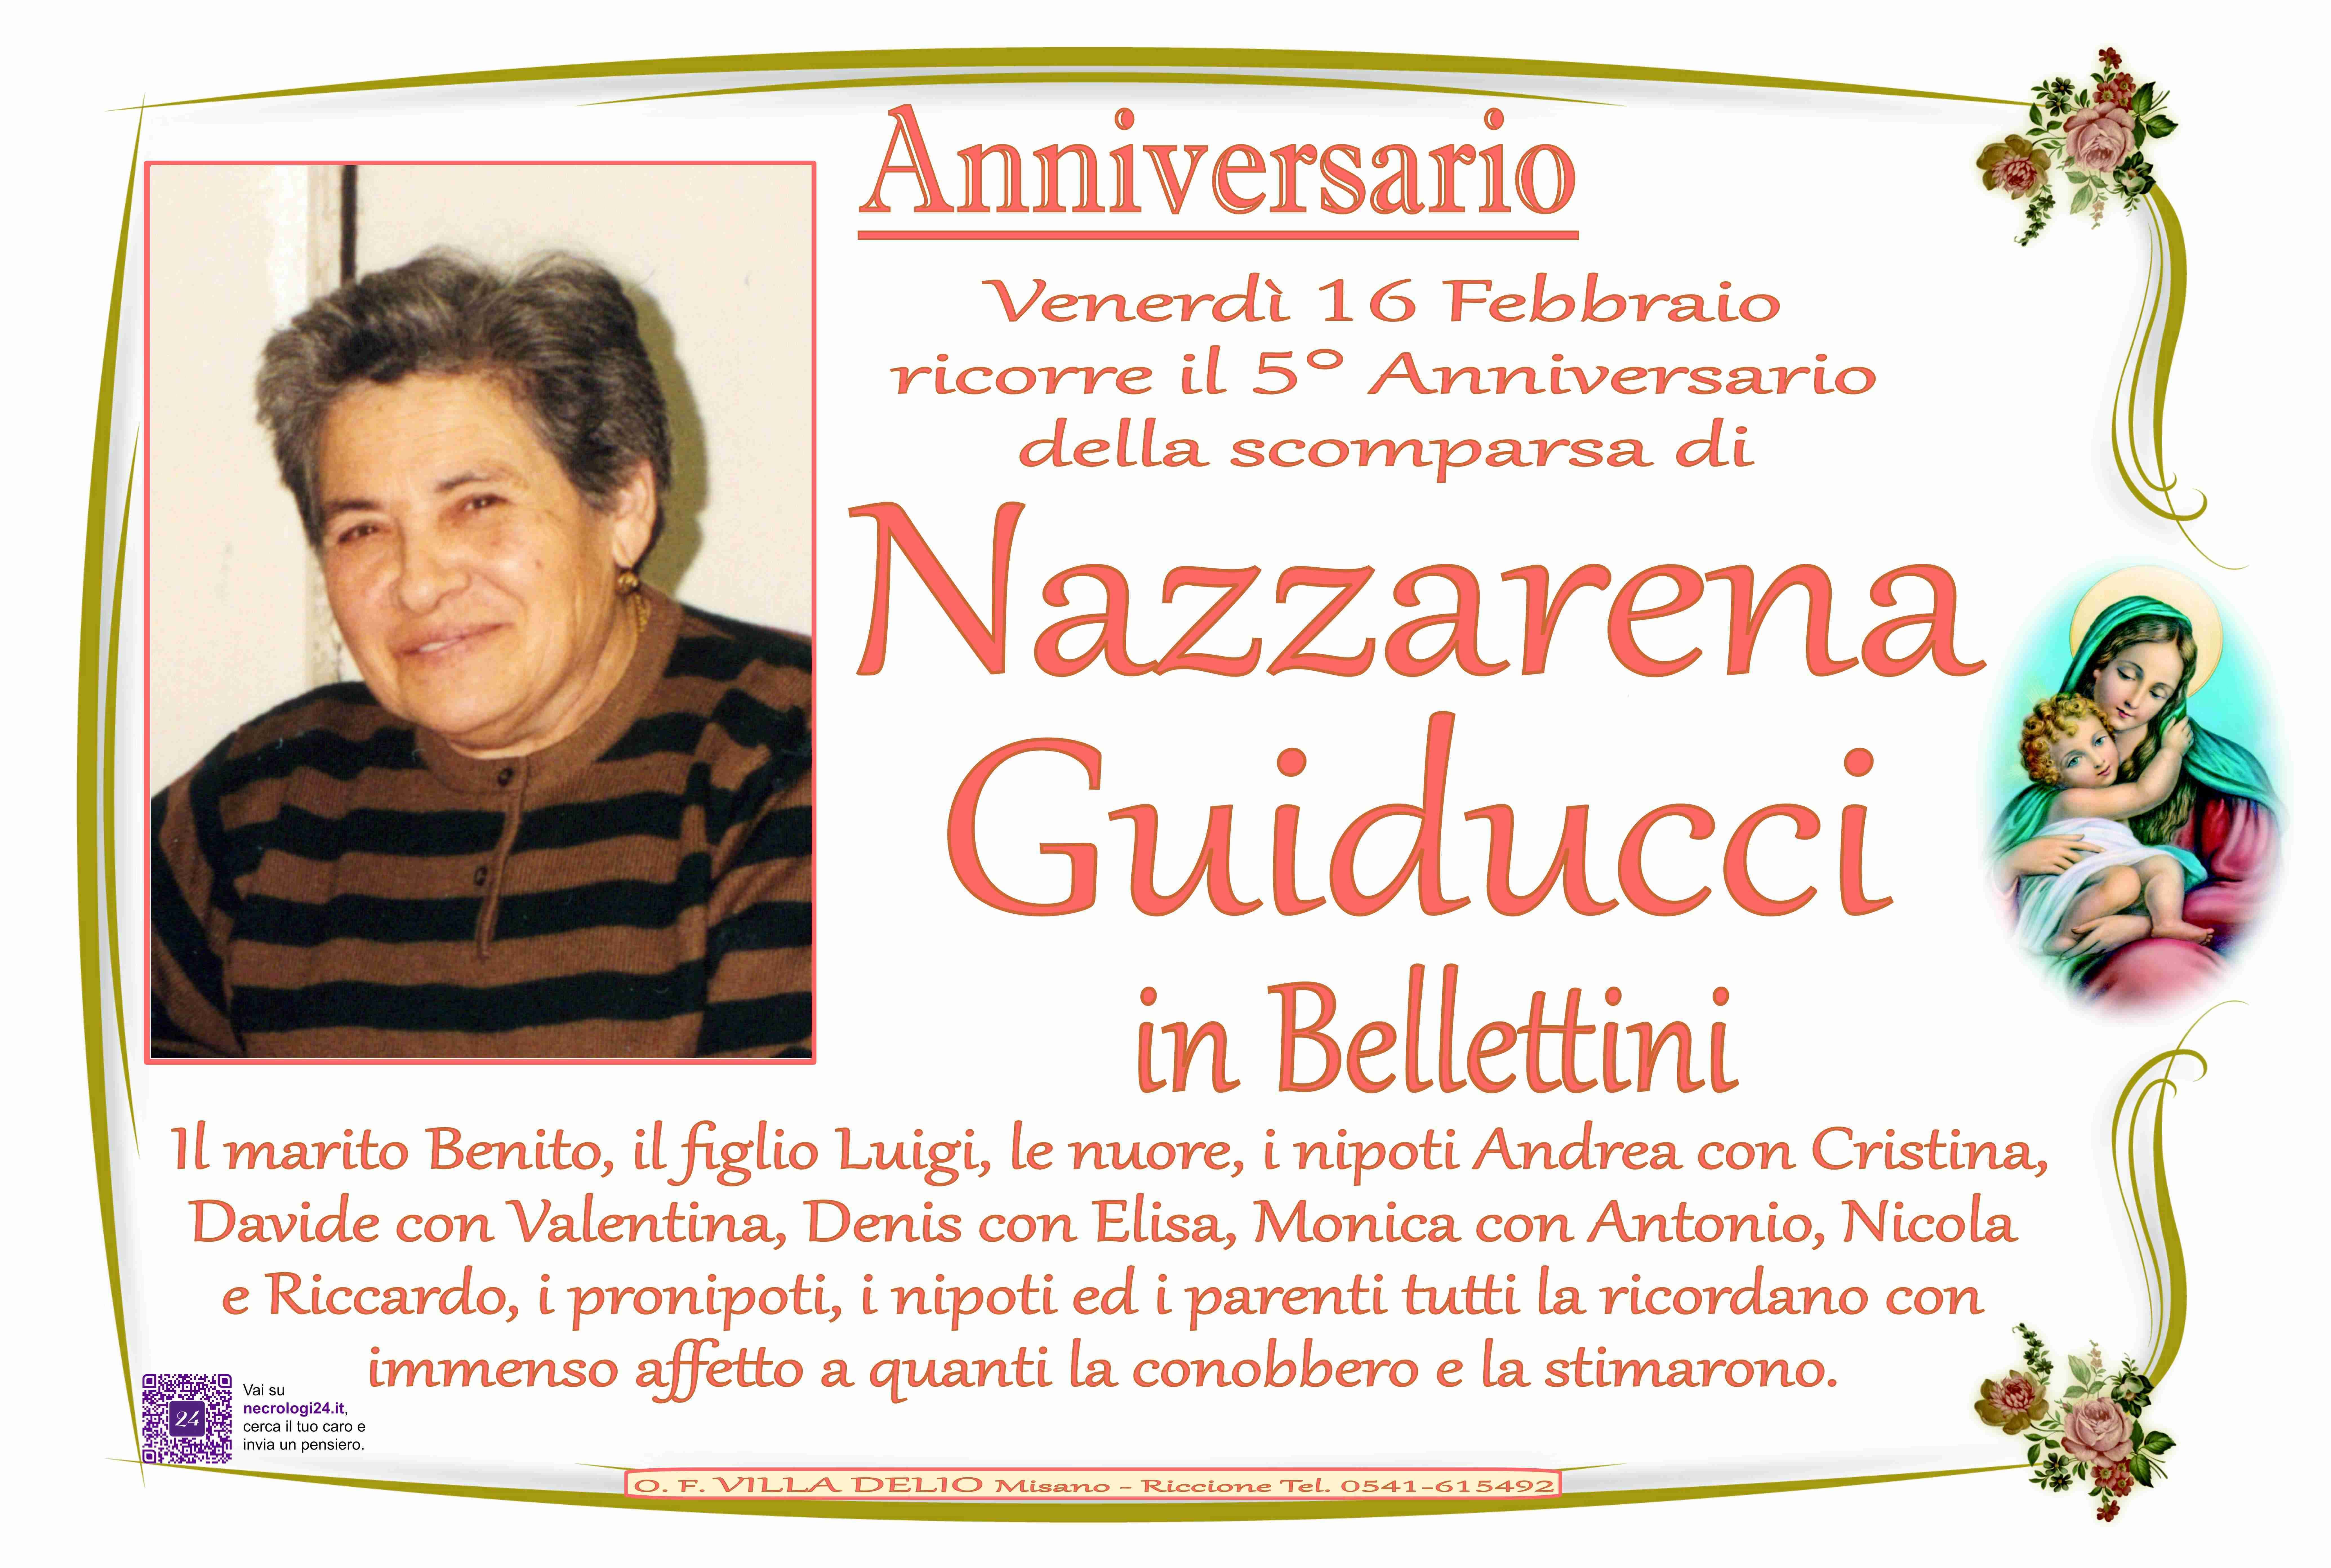 Nazzarena Guiducci in Bellettini